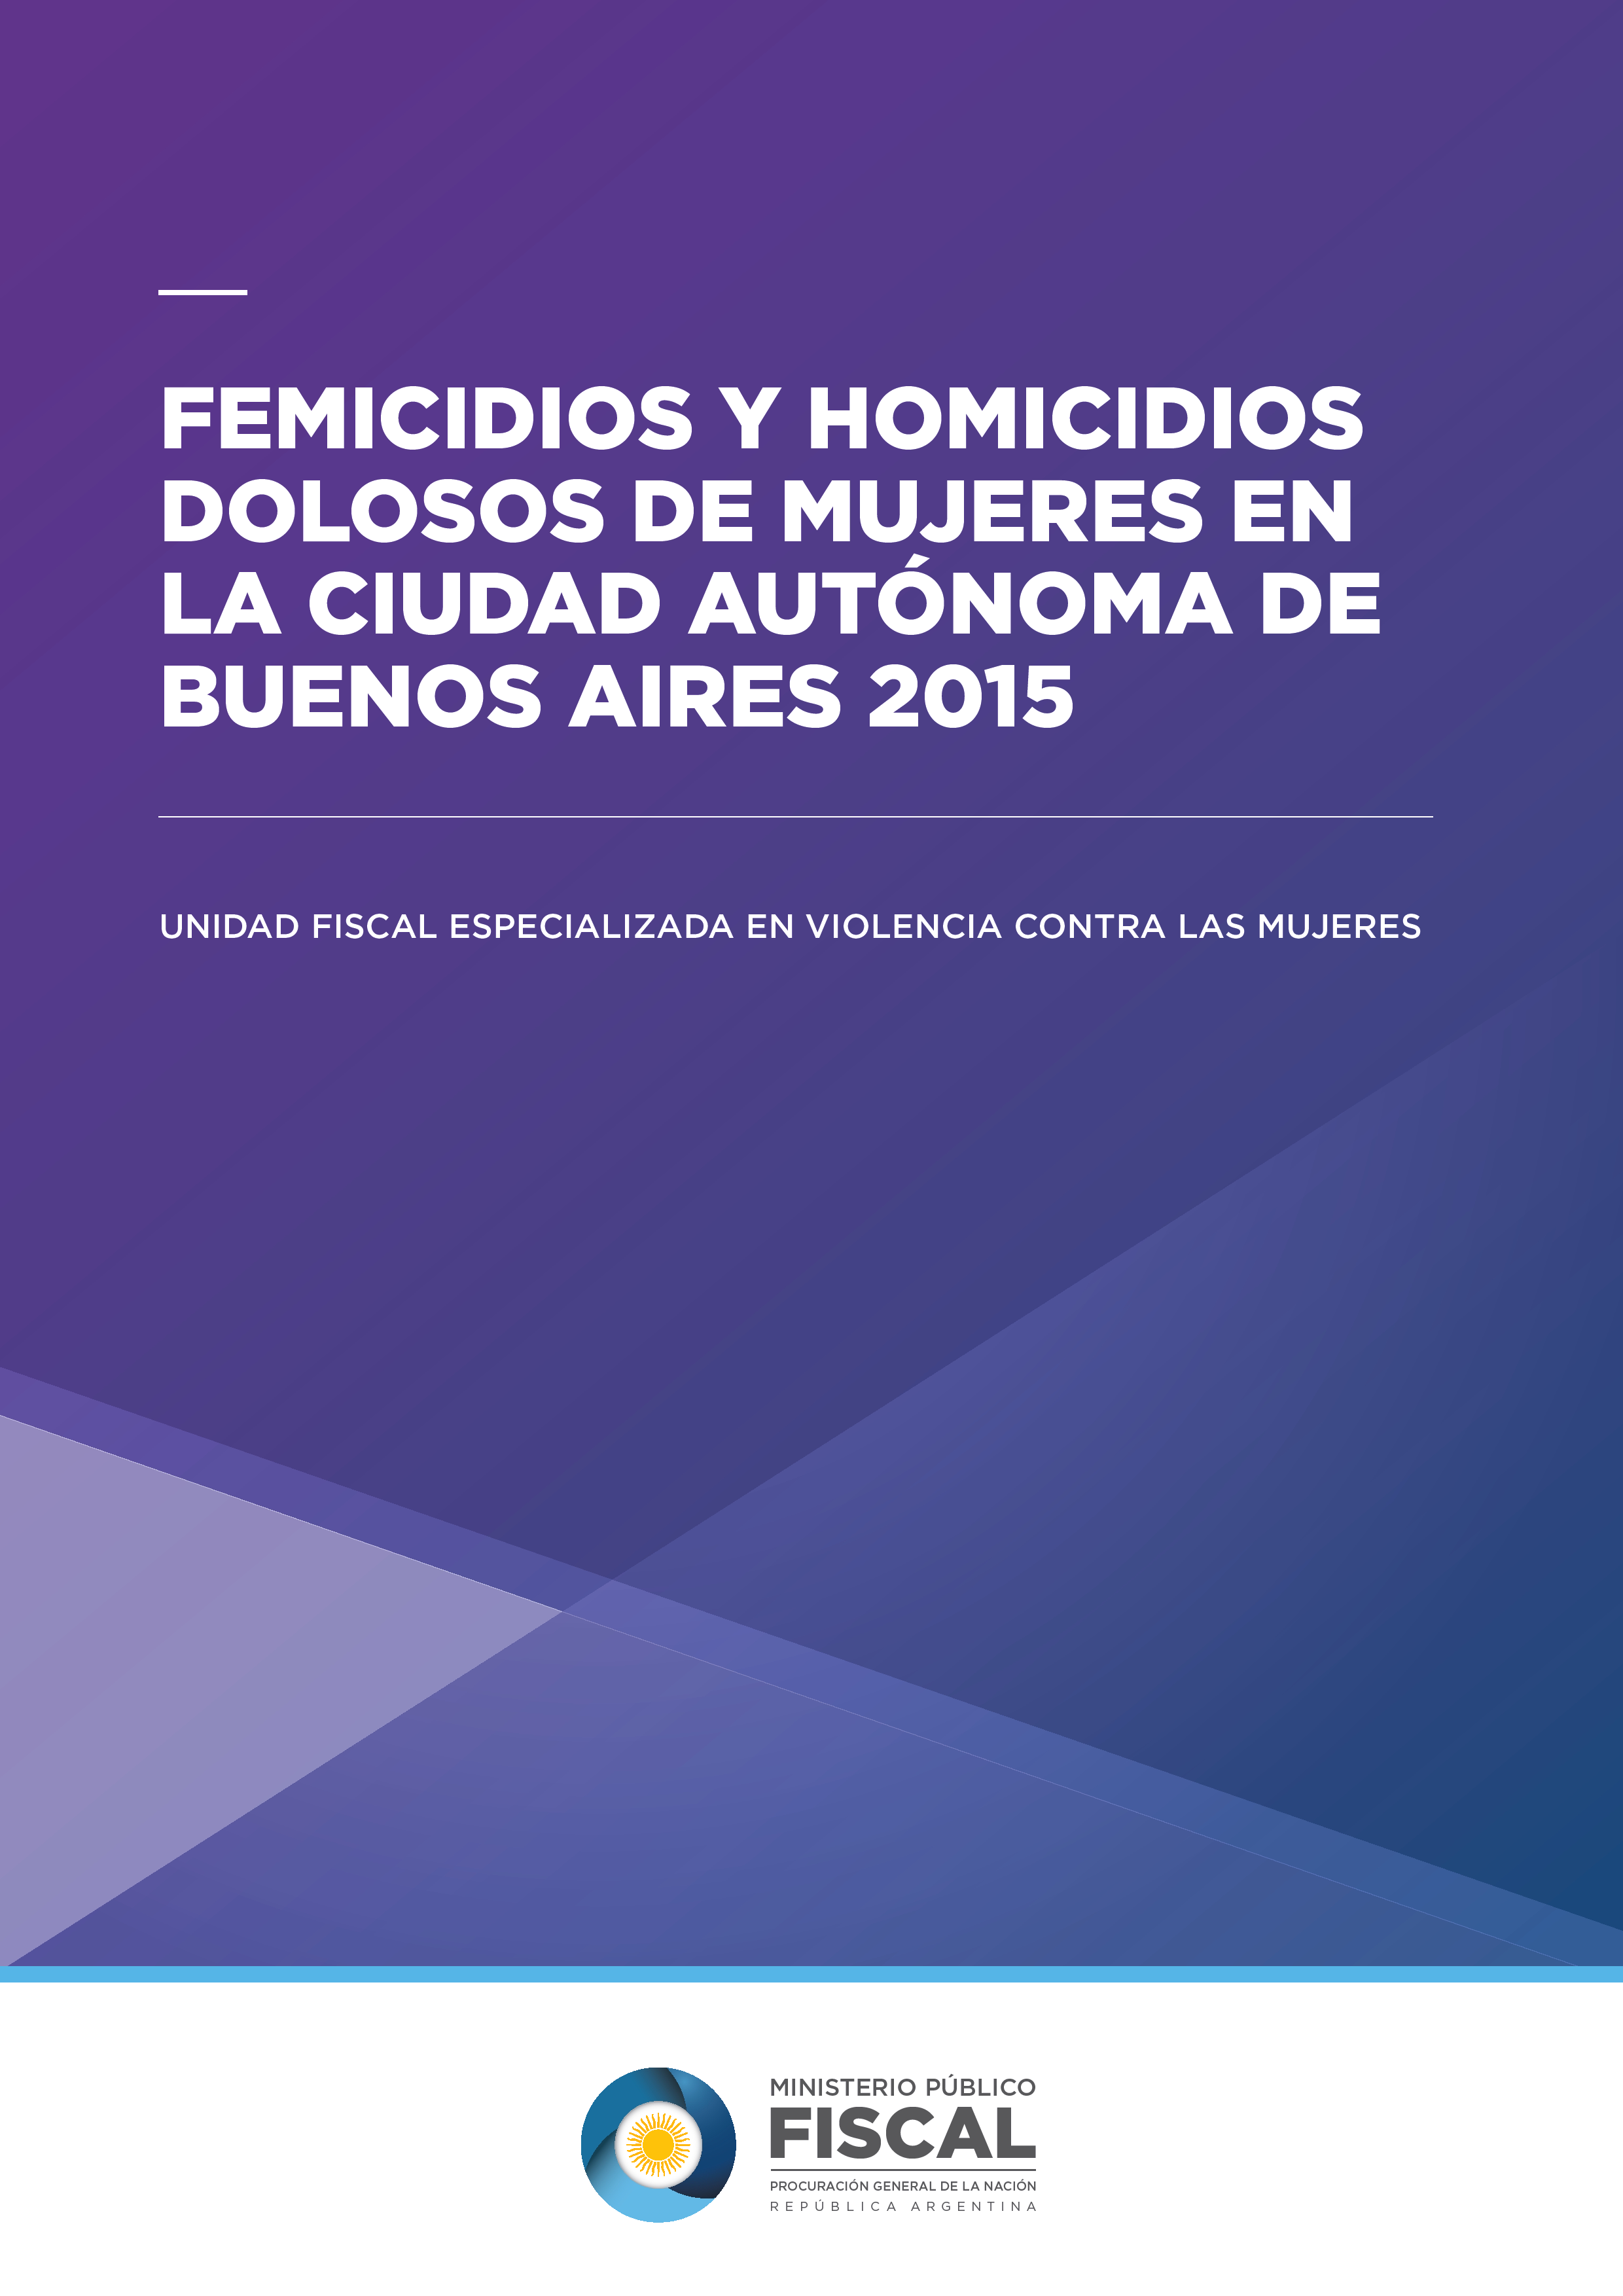 Femicidios y Homicidios dolosos de mujeres en la Ciudad Autónoma de Buenos Aires 2015